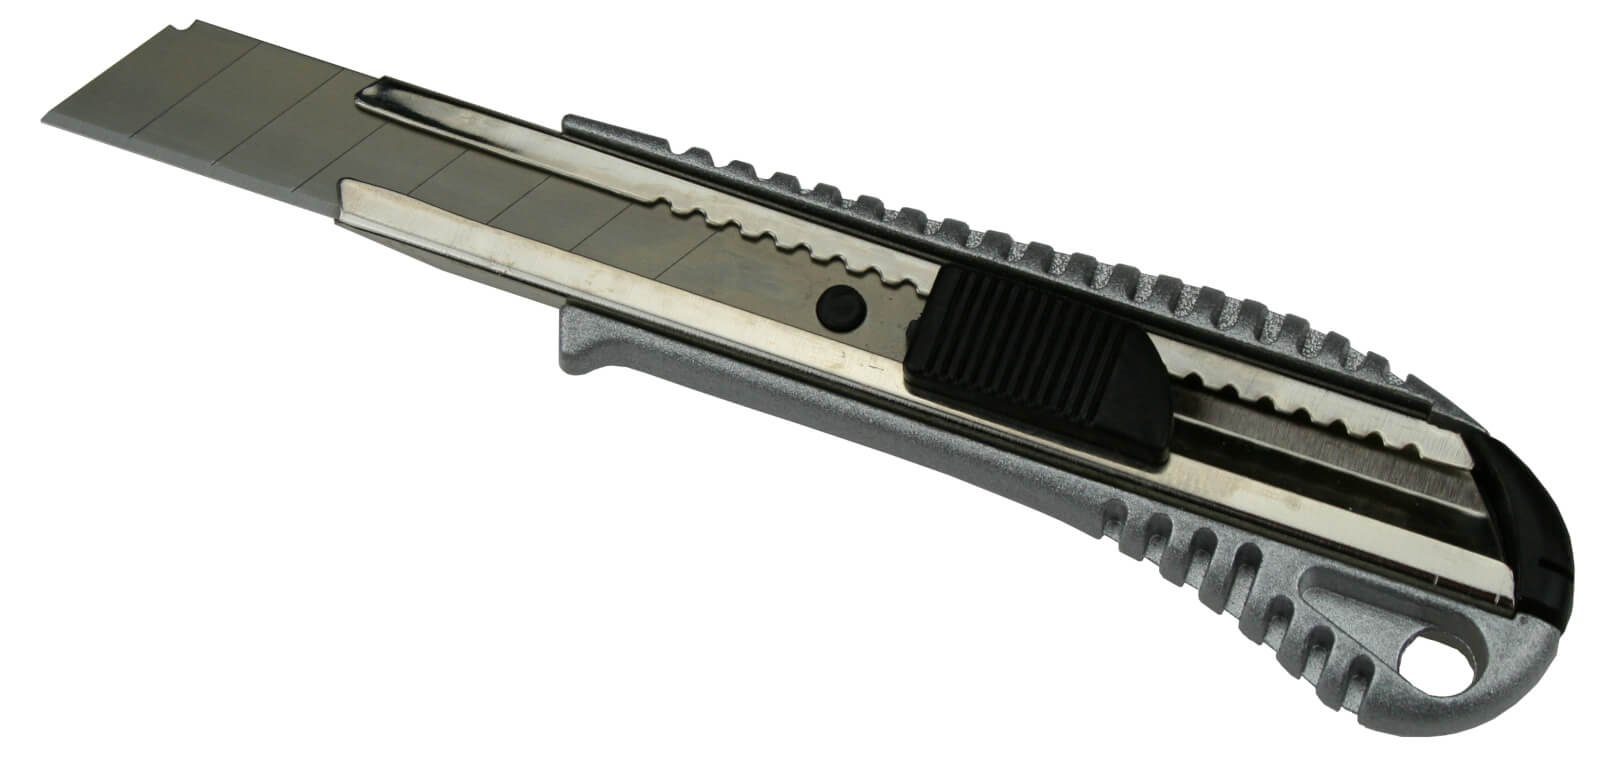 Alu Stück) 18mm Cuttermesser im (10 10 Cuttermesser Abbrechklingen Köcher + peveha24